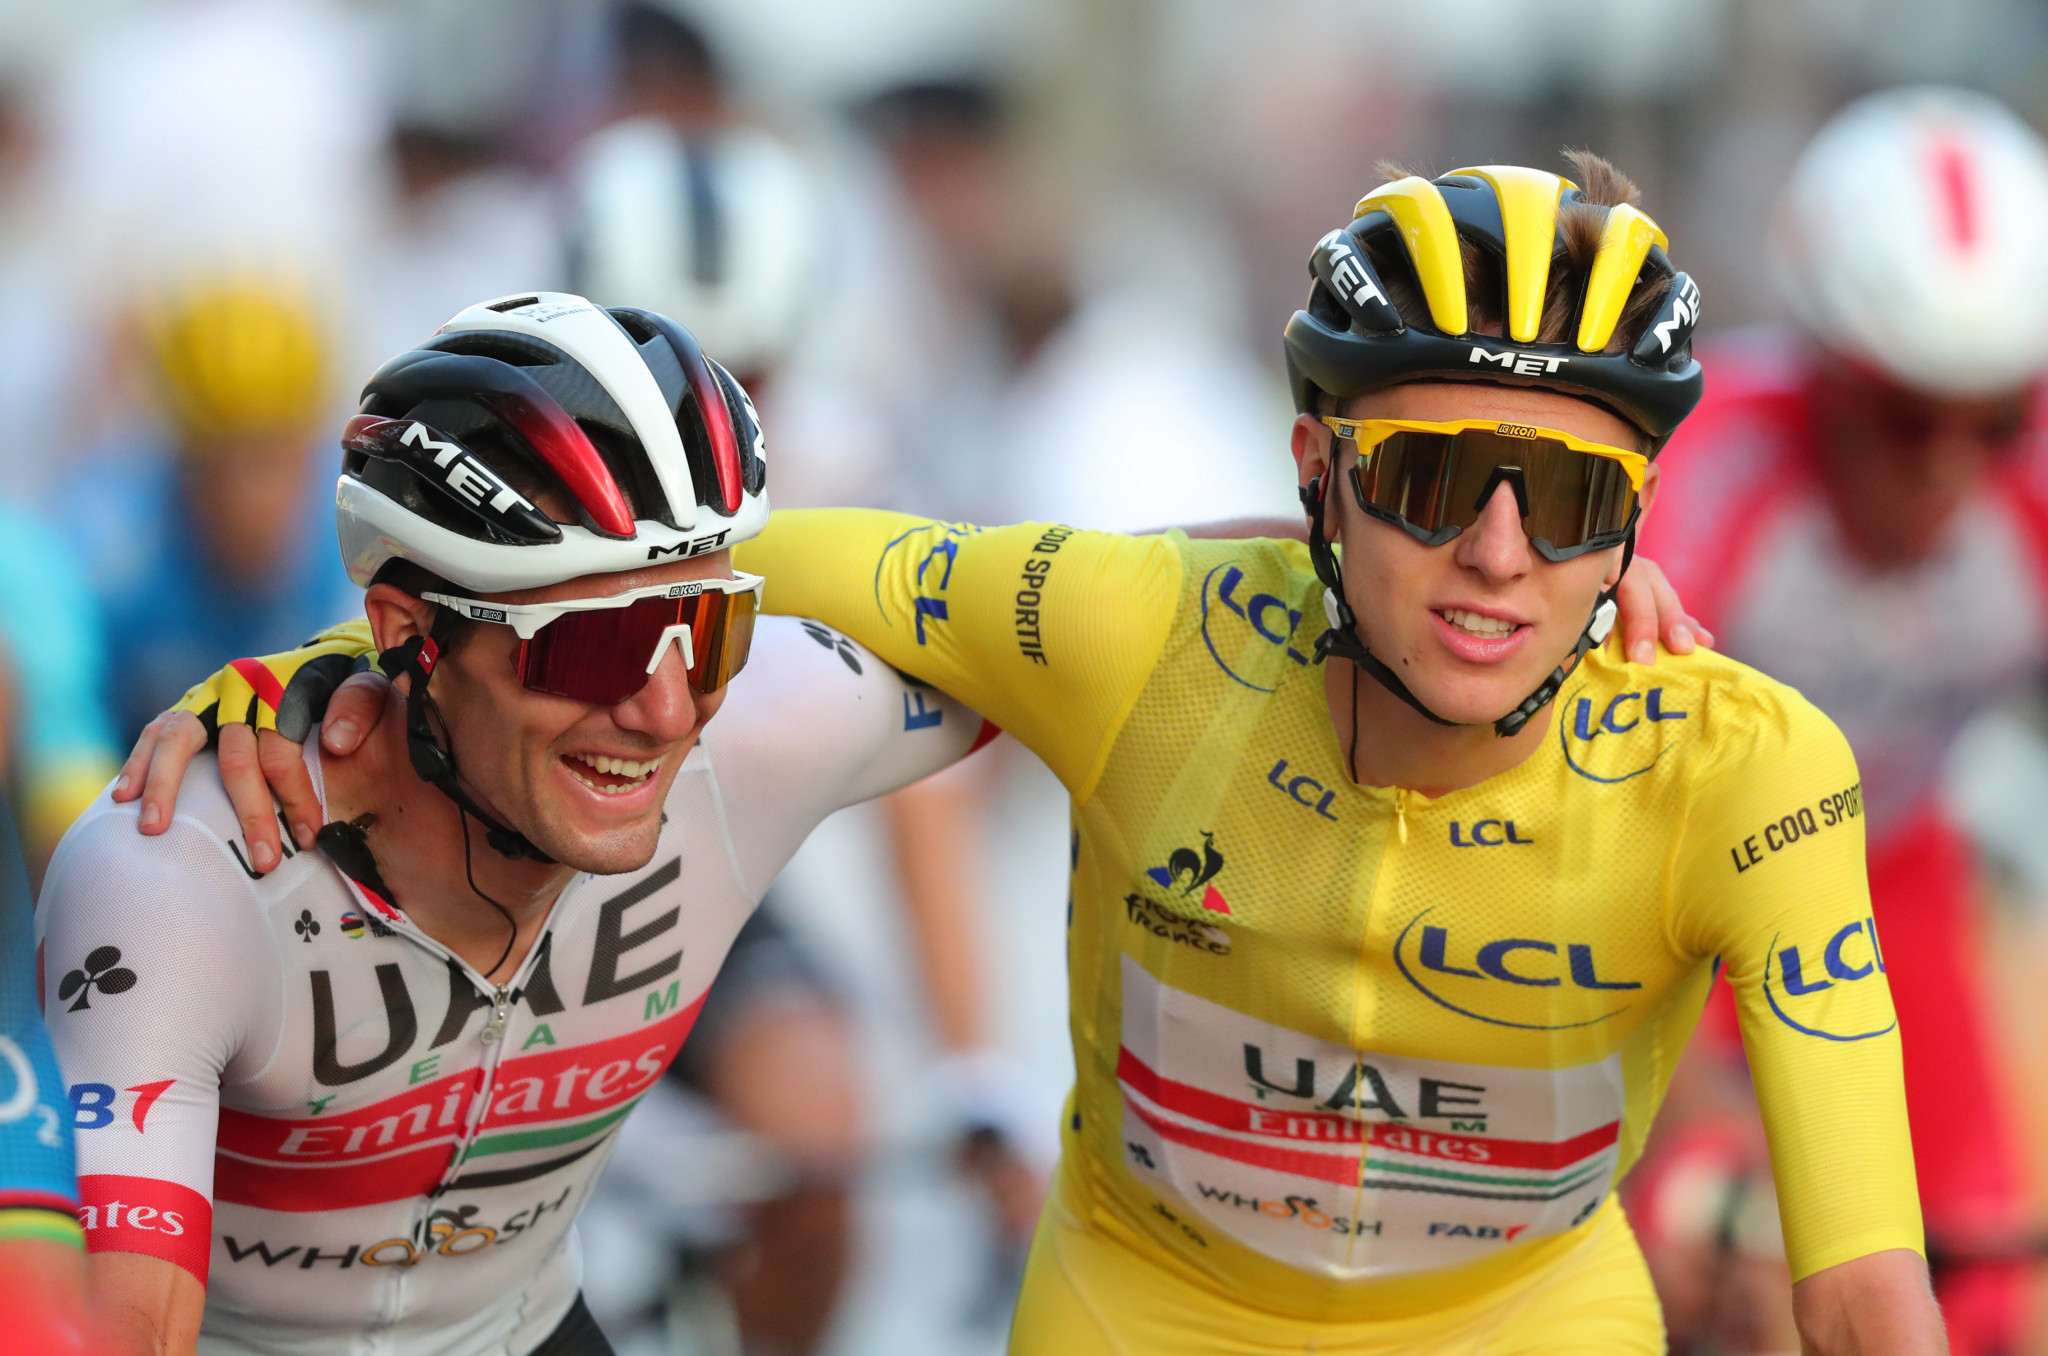 Le Coq Sportif is a long-term partner of the Tour de France ©Getty Images